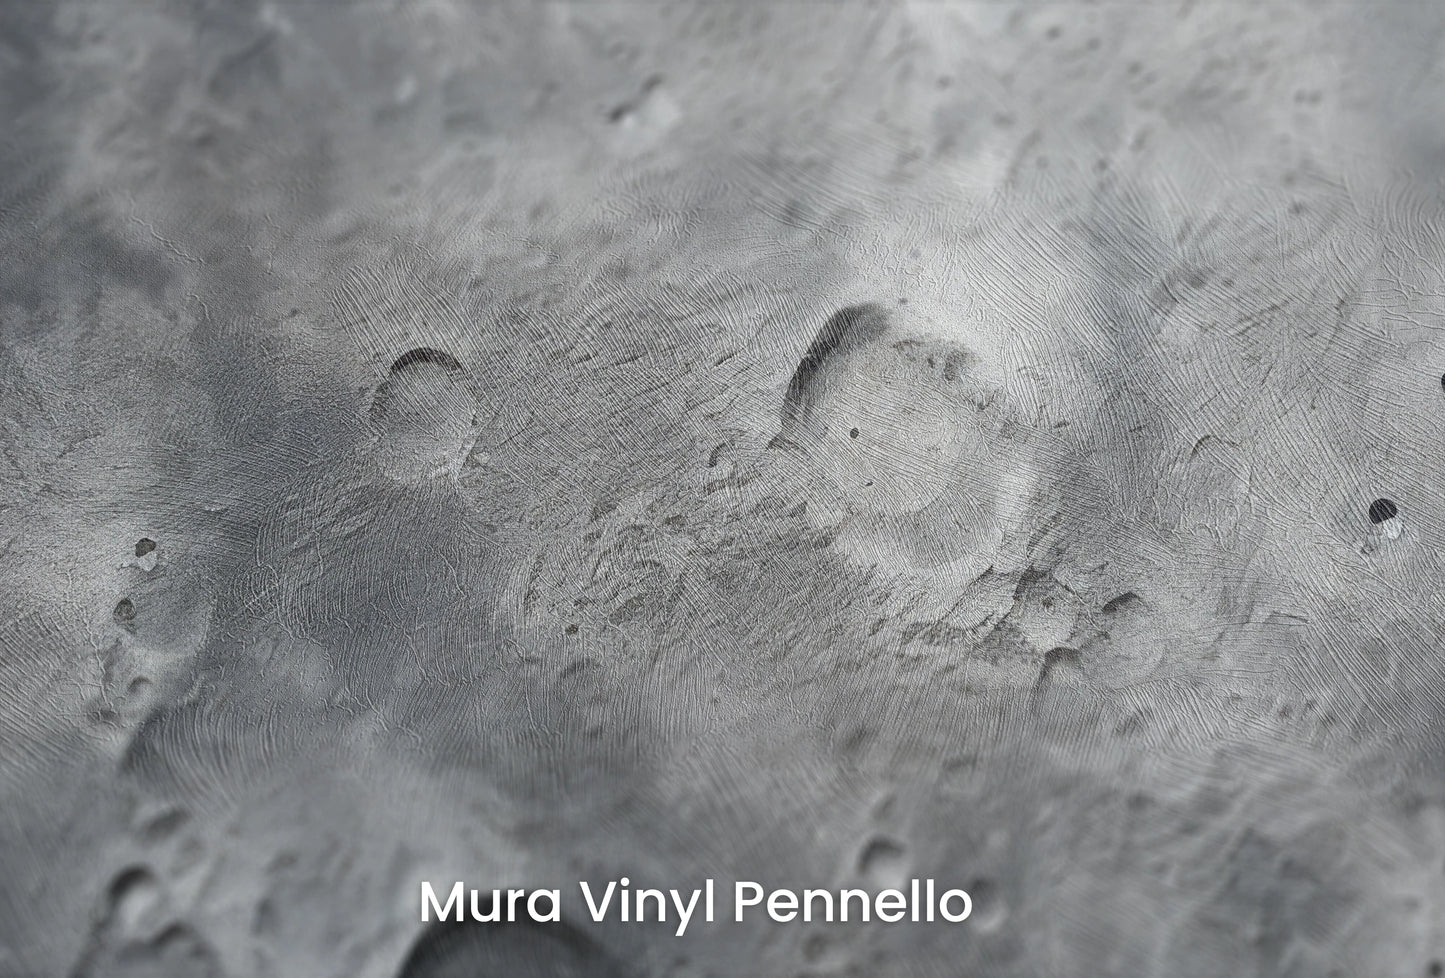 Zbliżenie na artystyczną fototapetę o nazwie Lunar Landscape #2 na podłożu Mura Vinyl Pennello - faktura pociągnięć pędzla malarskiego.